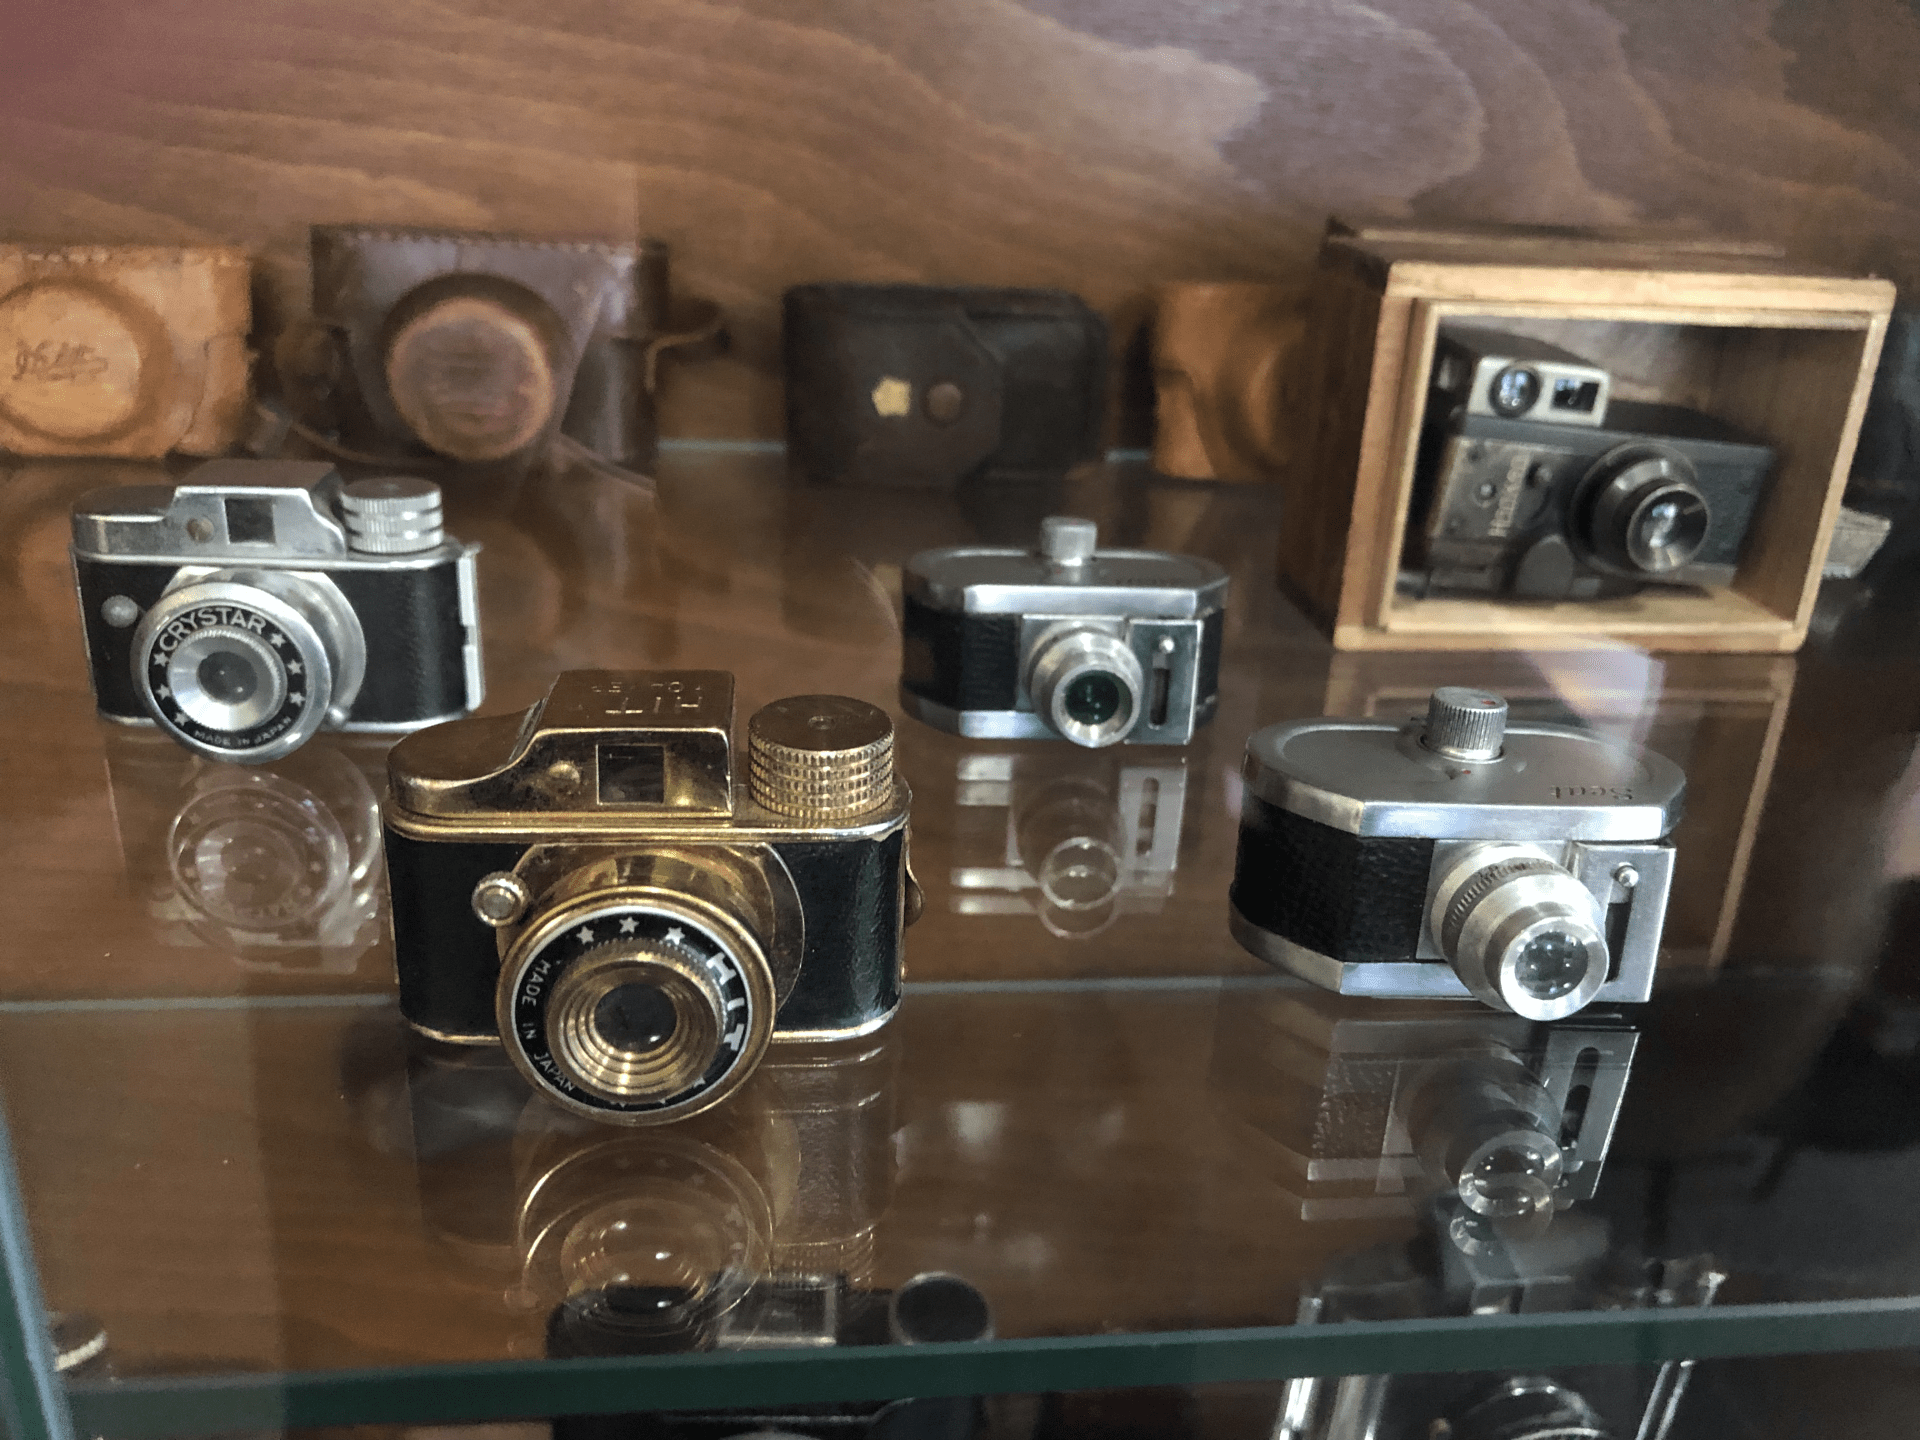 Sběratel z Hradce Králové vlastní unikátní sbírku fotoaparátů. Mezi nejzajímavější modely se řadí ty špionážní.